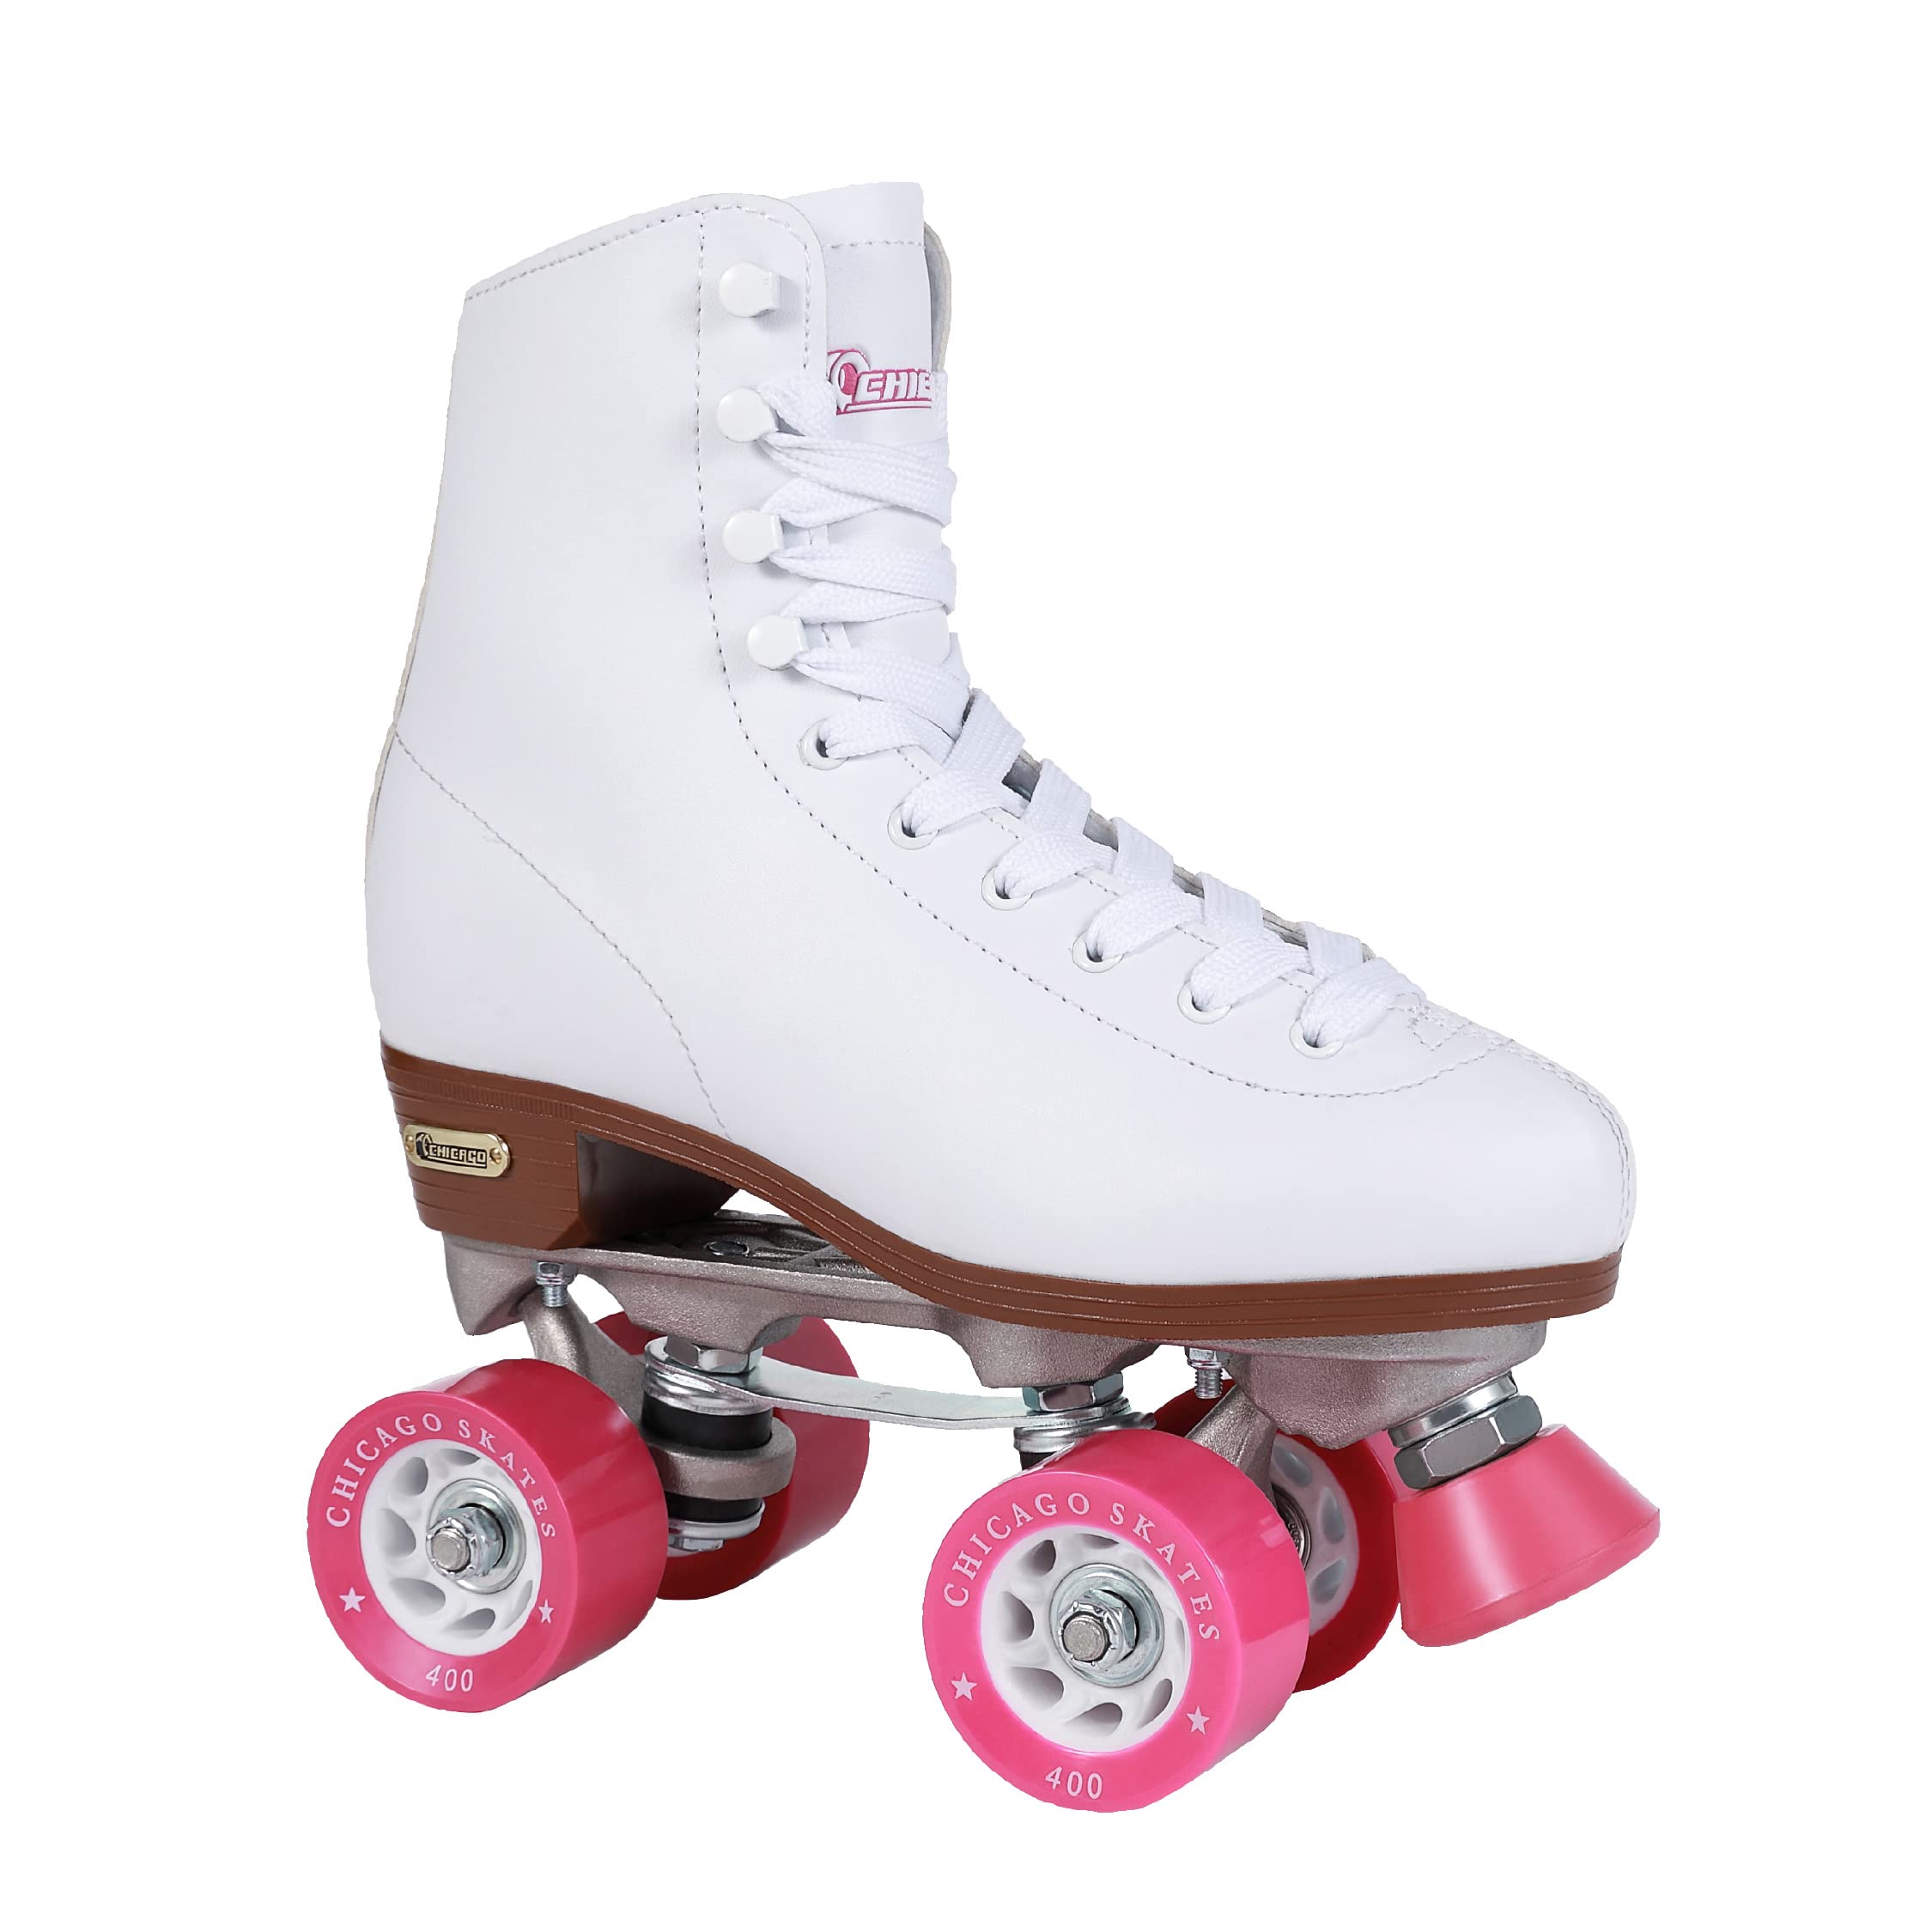  CHICAGO महिलाओं और लड़कियों के क्लासिक रोलर स्केट्स - प्रीमियम सफेद क्वाड रिंक...